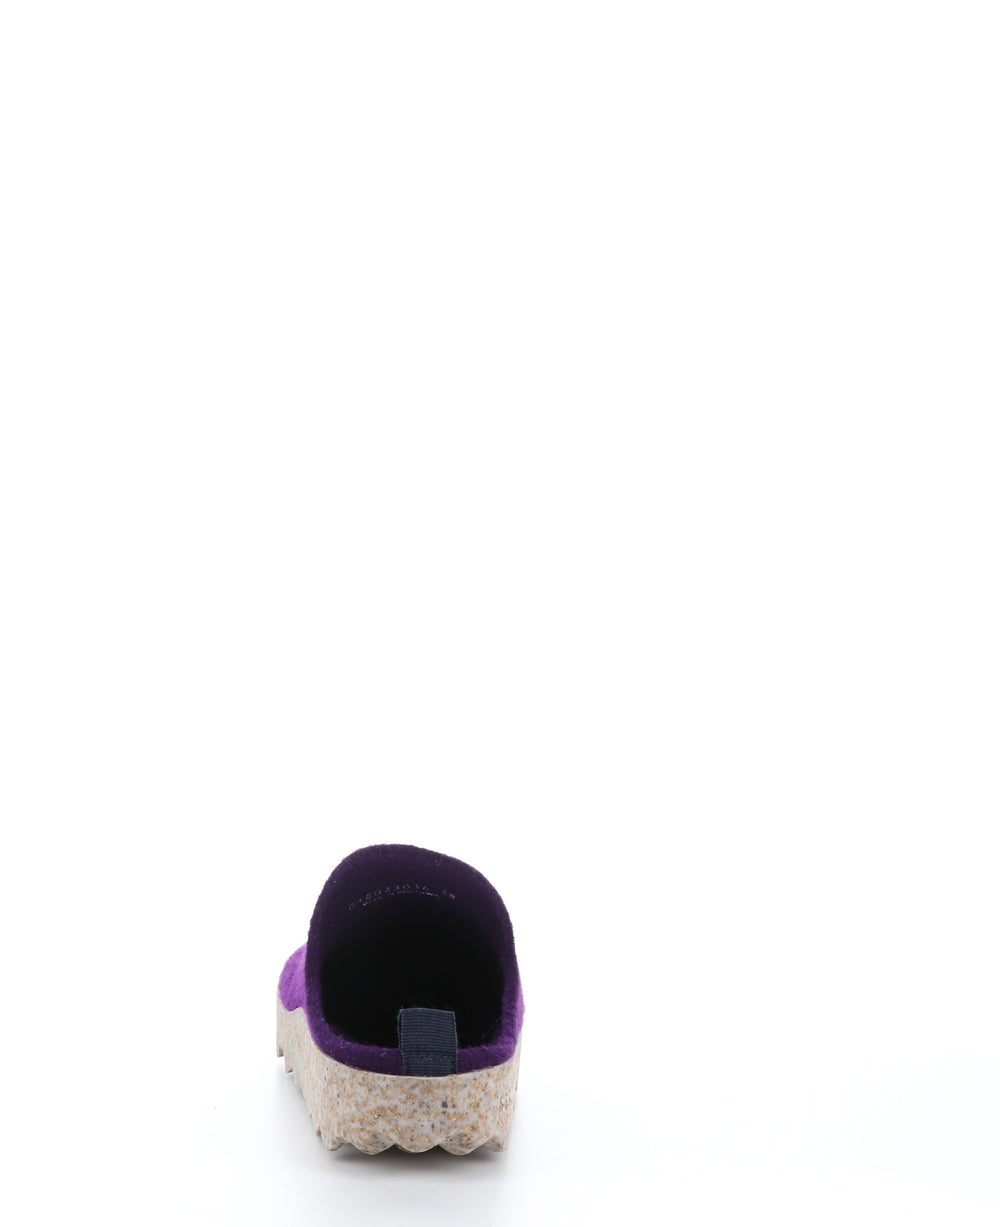 COME023ASP Dark Purple Round Toe Shoes